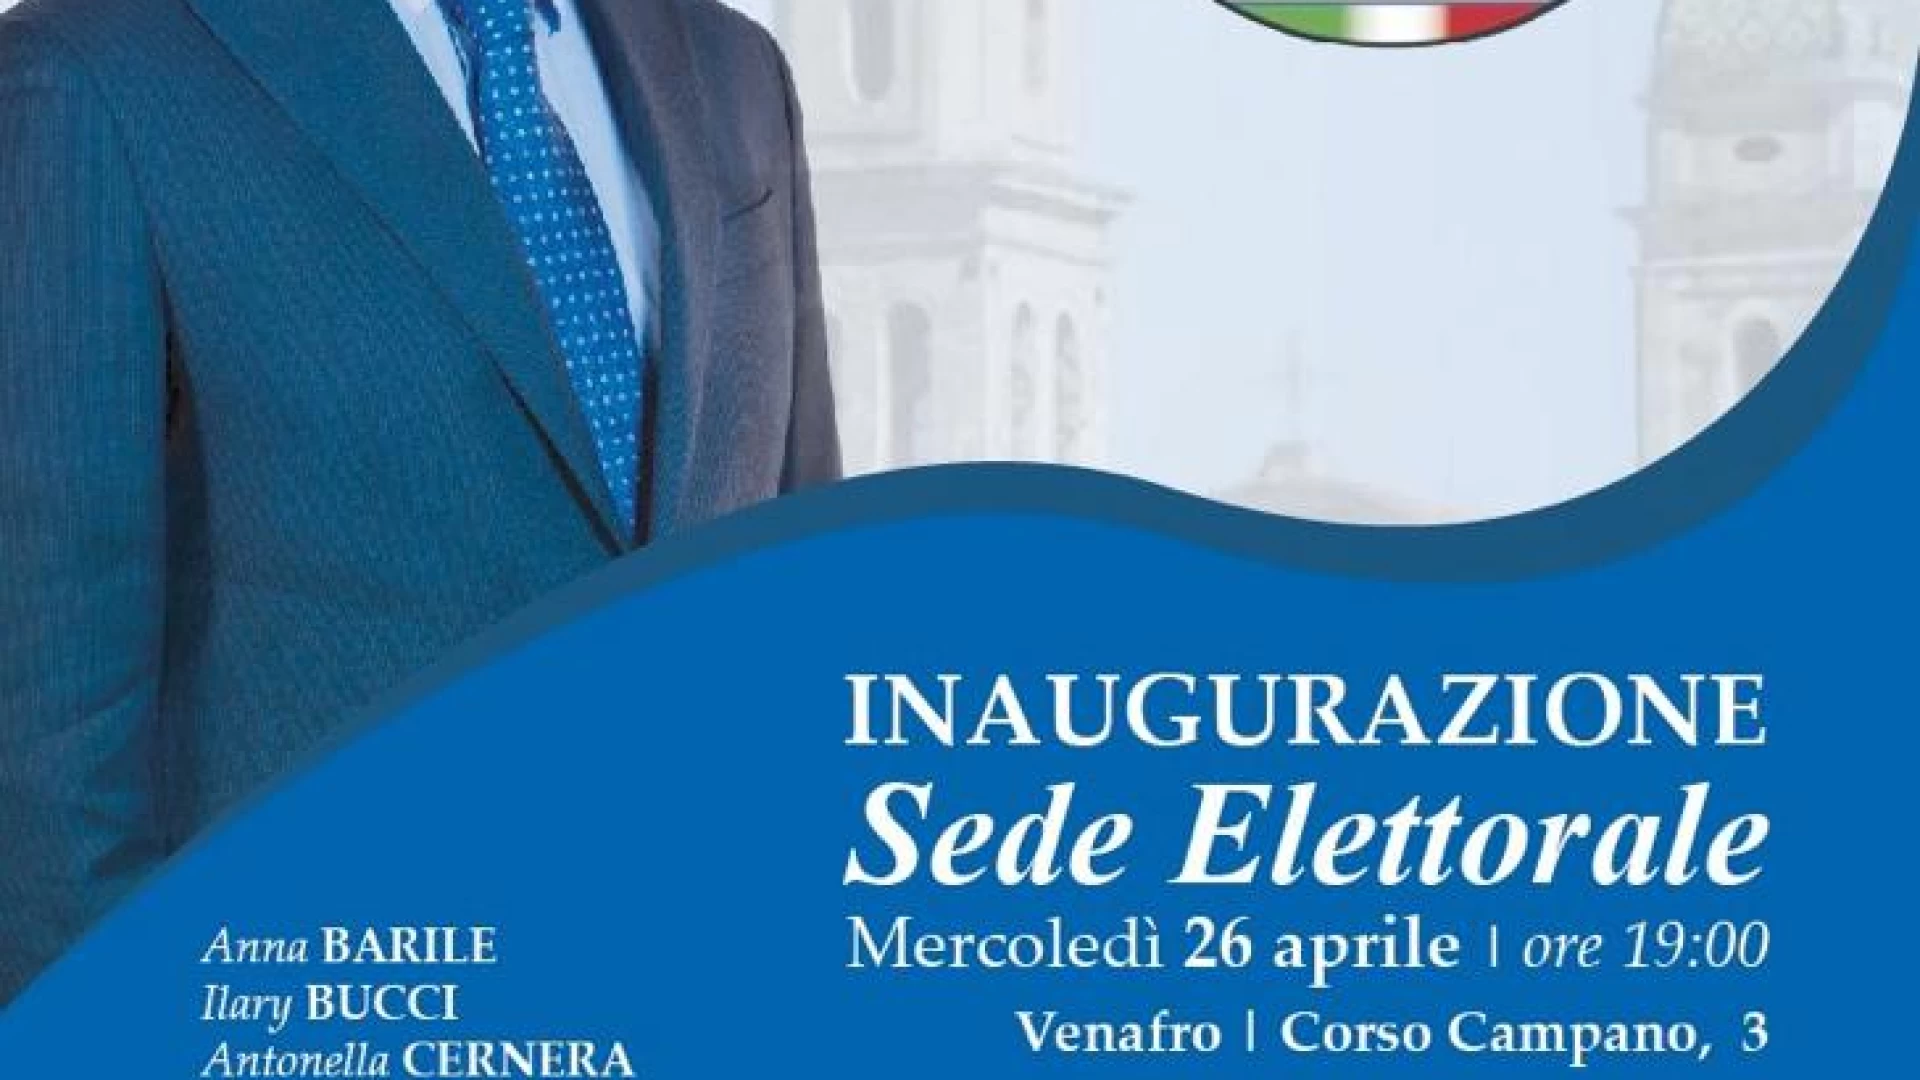 Venafro: Alfredo Ricci inaugura la sede elettorale. Punto politico su corso Campano